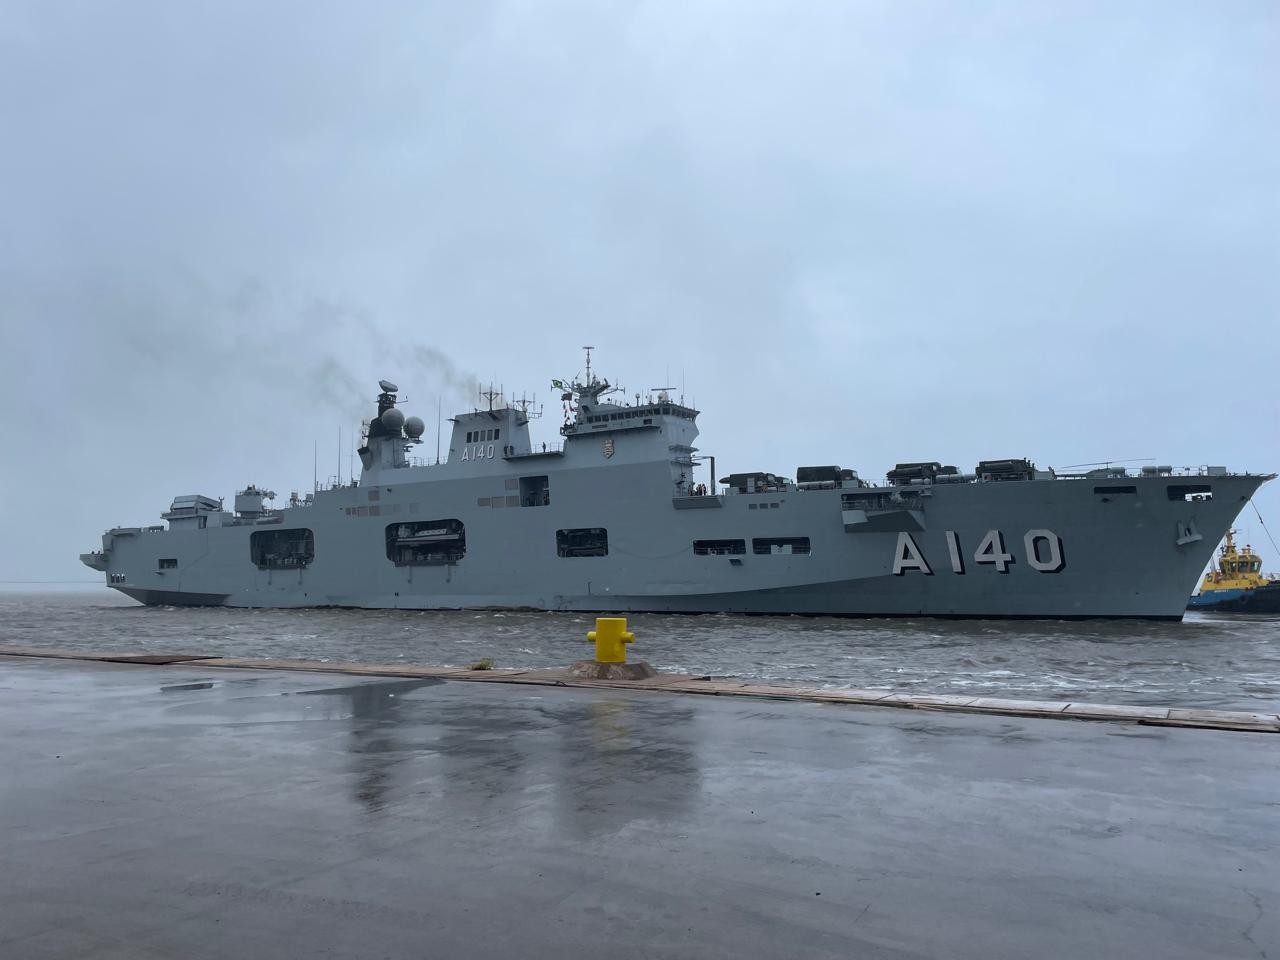 Rio Grande recebe maior navio de guerra da Marinha para ajuda humanitária